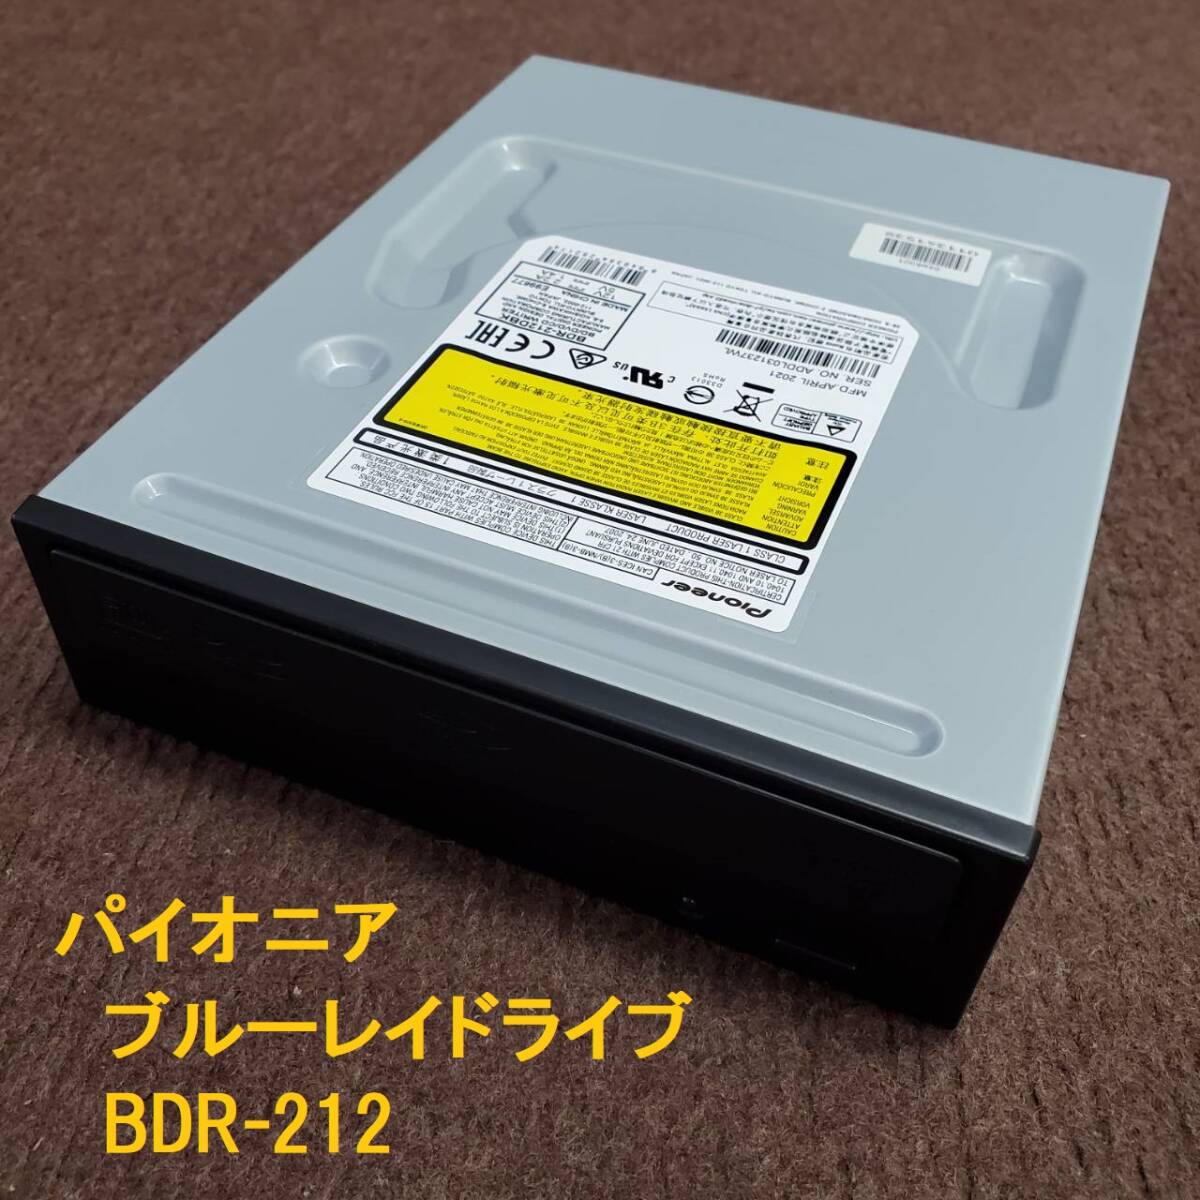 パイオニア ブルーレイドライブ 2021年4月製造 BDR-212 SATA デスクトップ 5インチ Pioneer Blu-ray DVD 書込みテストOKの画像1